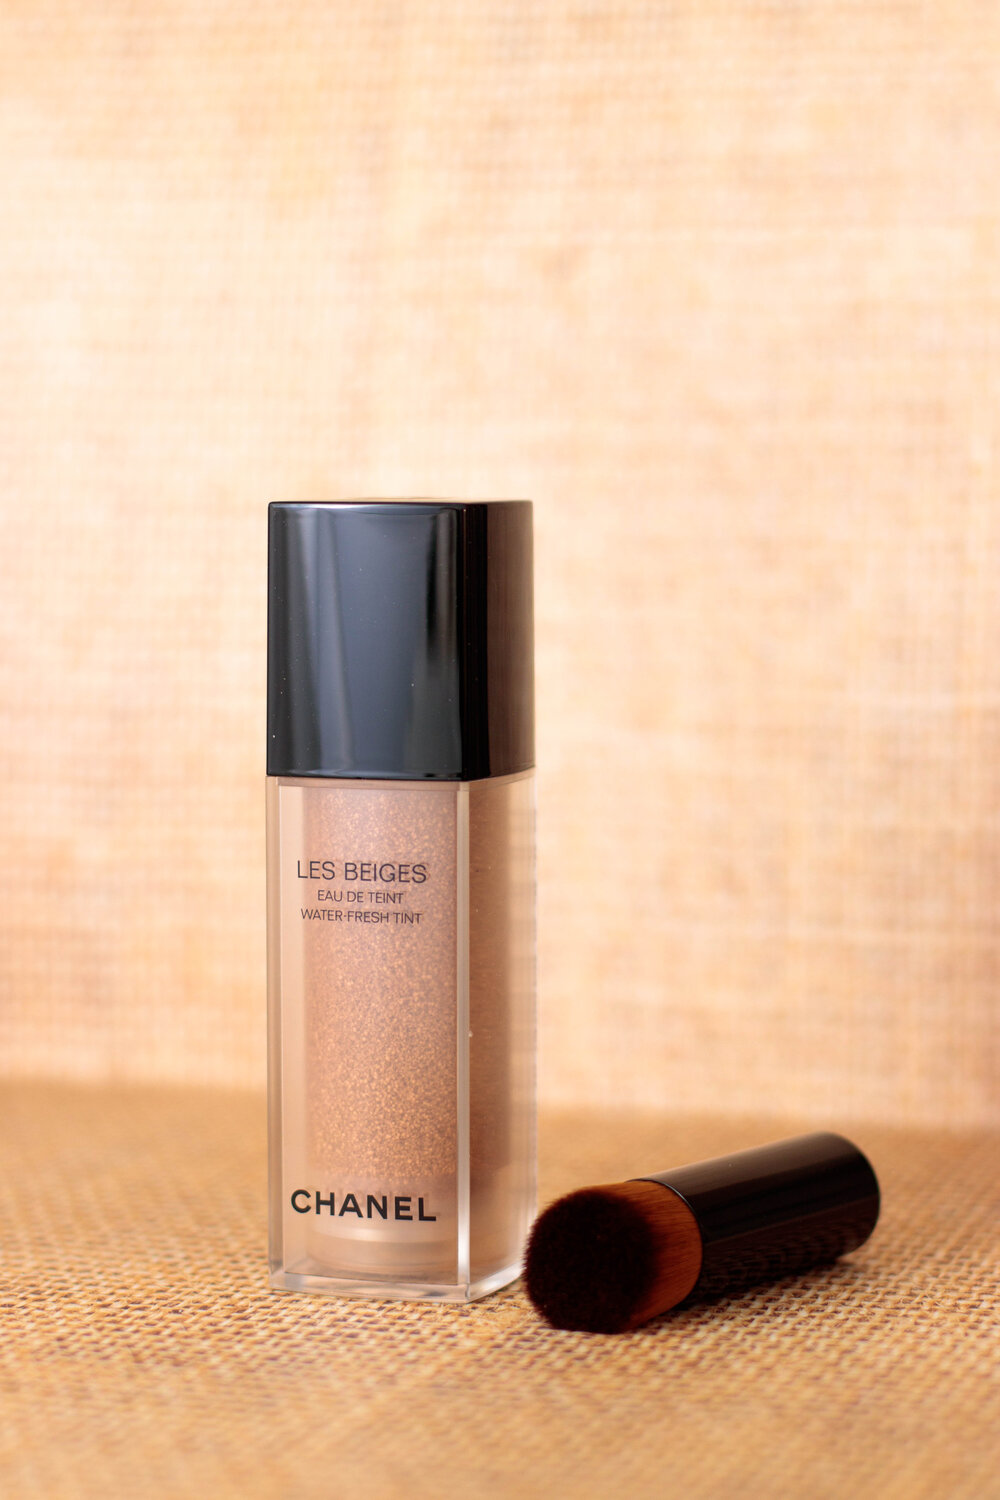 Chanel Beiges Eau de Teint, mon ! — Pauuulette - Blog Makeup